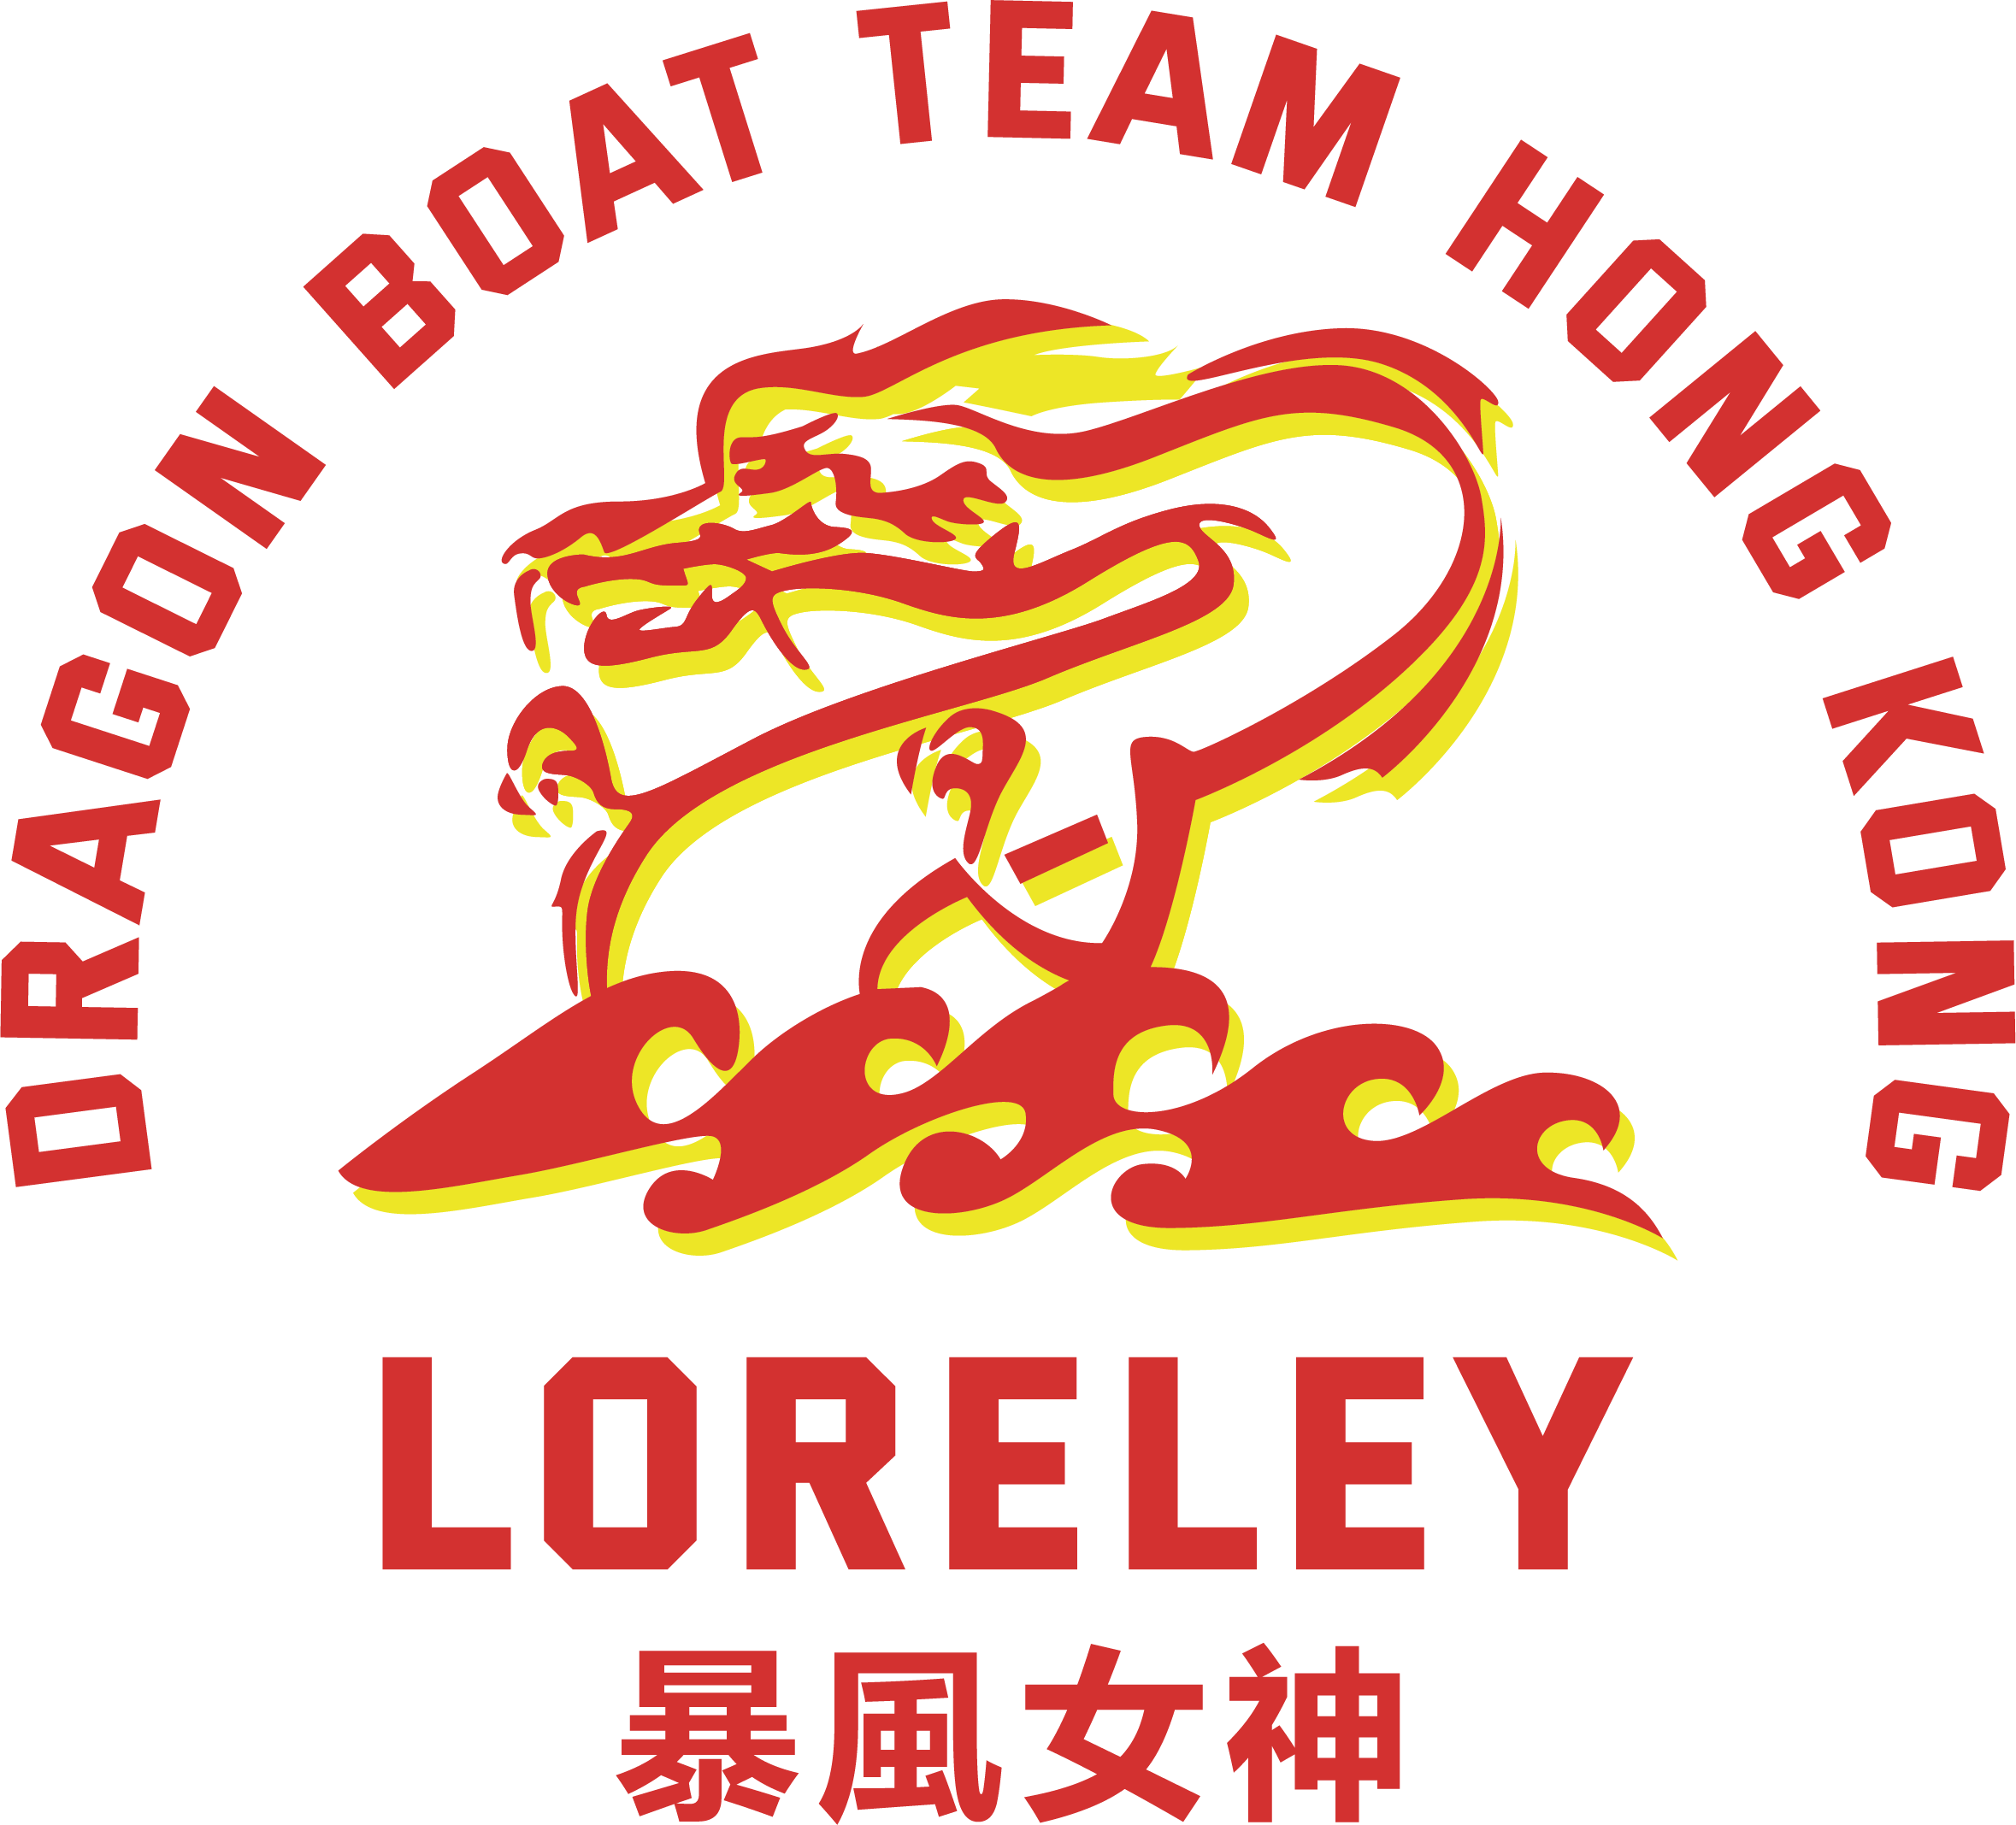 Loreley Dragon Boat